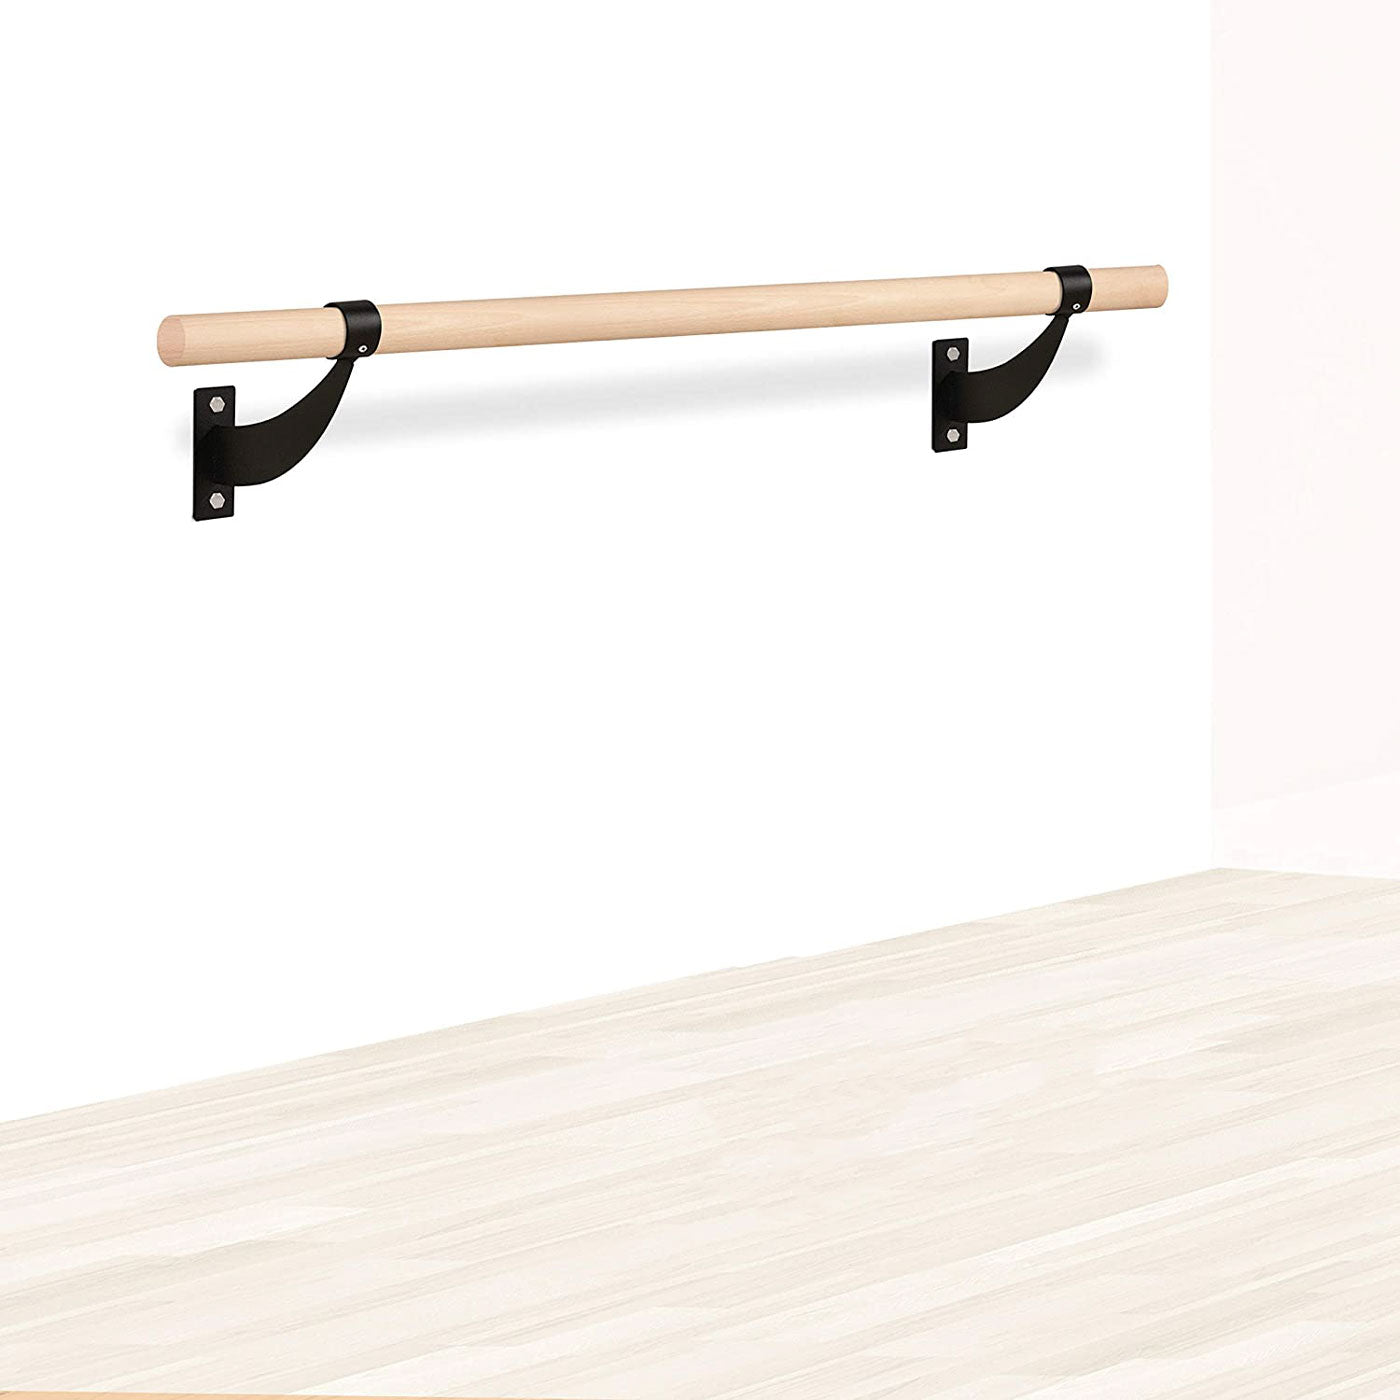 MEMAX Portable Double Ballet Barre Stretch Bar - 140cm - Gym Plus